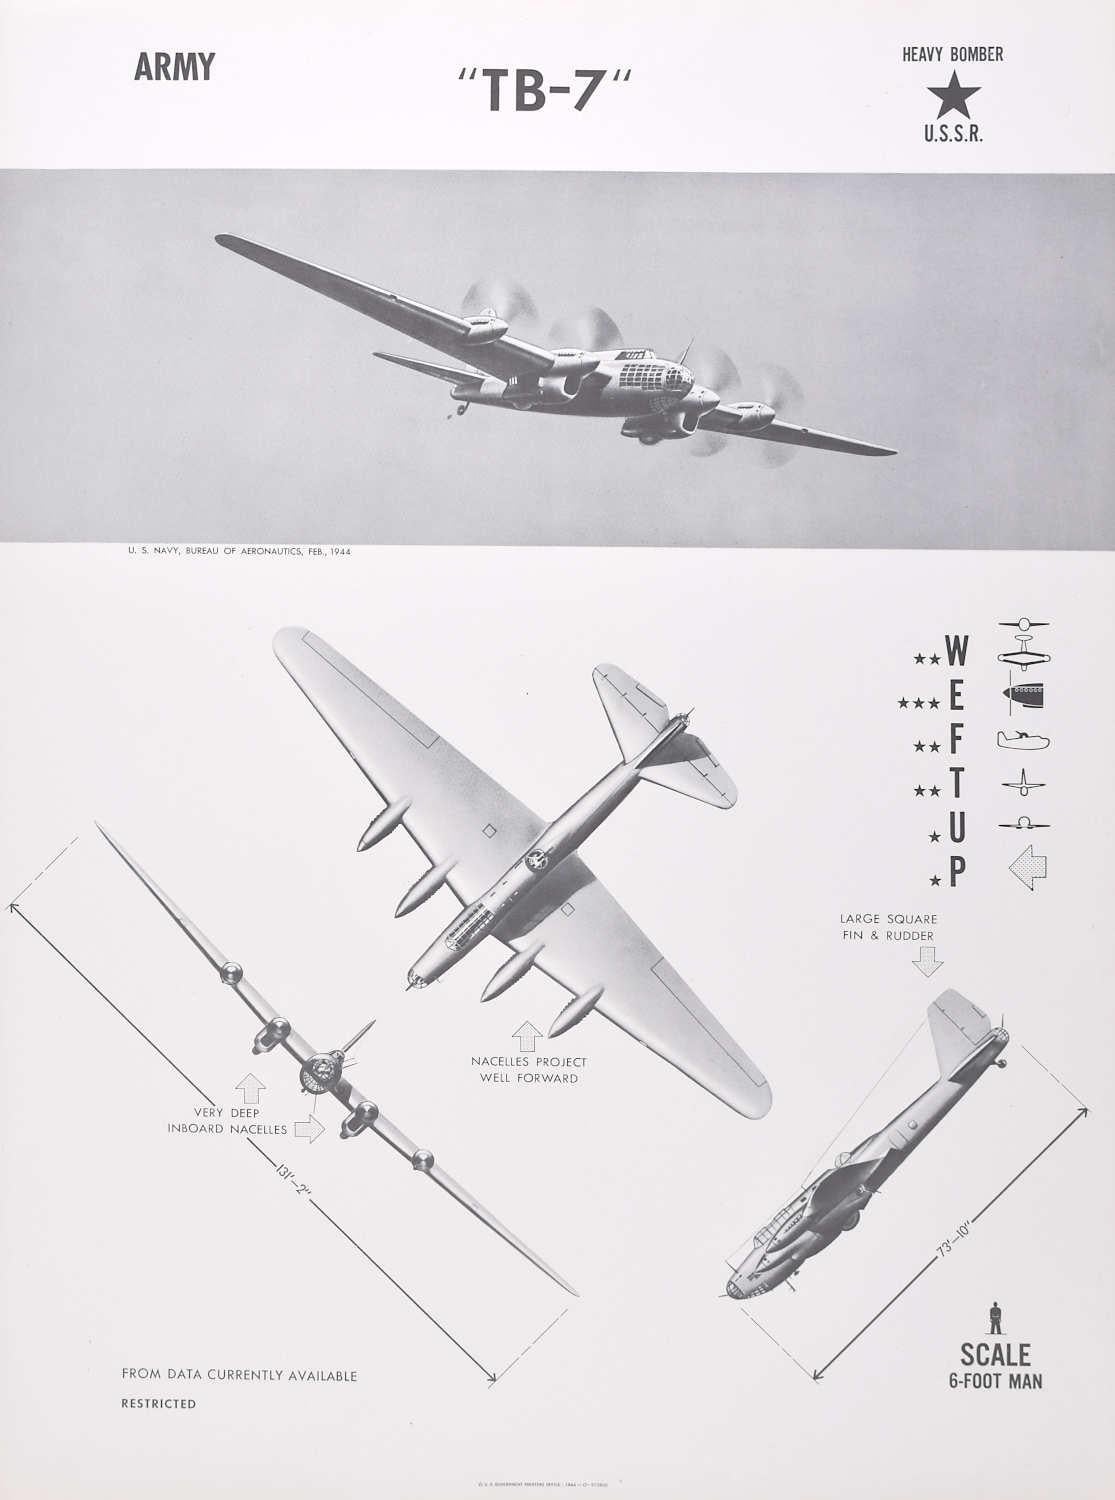 Affiche d'identification d'avions bombardiers lourds de l'URSS « TB-7 » de 1944, Seconde Guerre mondiale - Print de Unknown